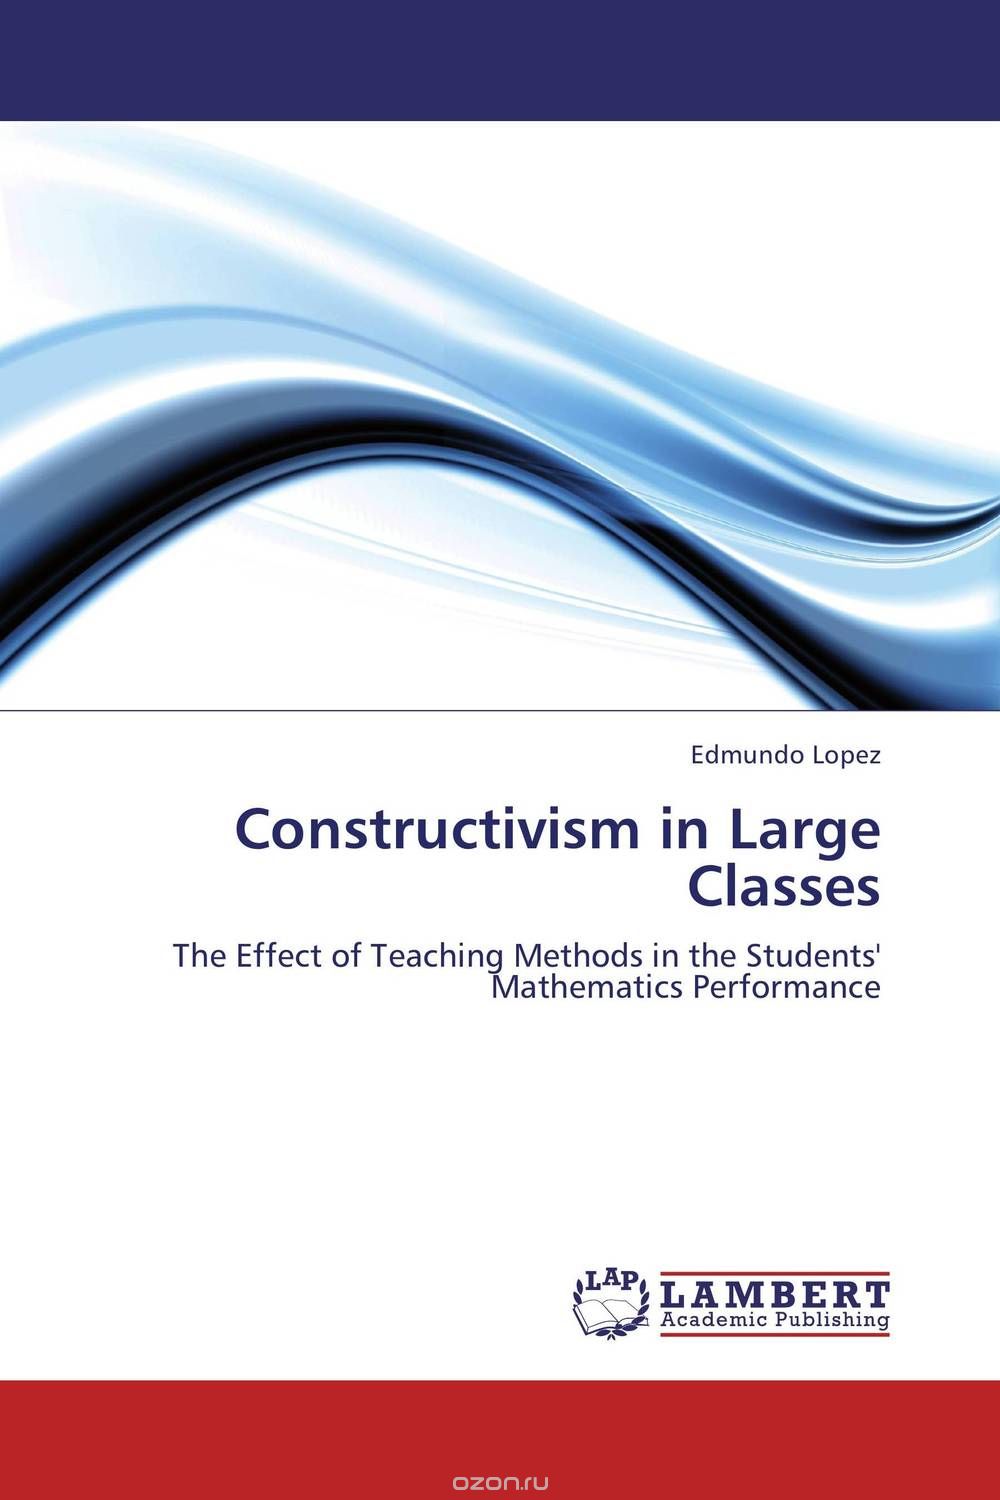 Скачать книгу "Constructivism in Large Classes"